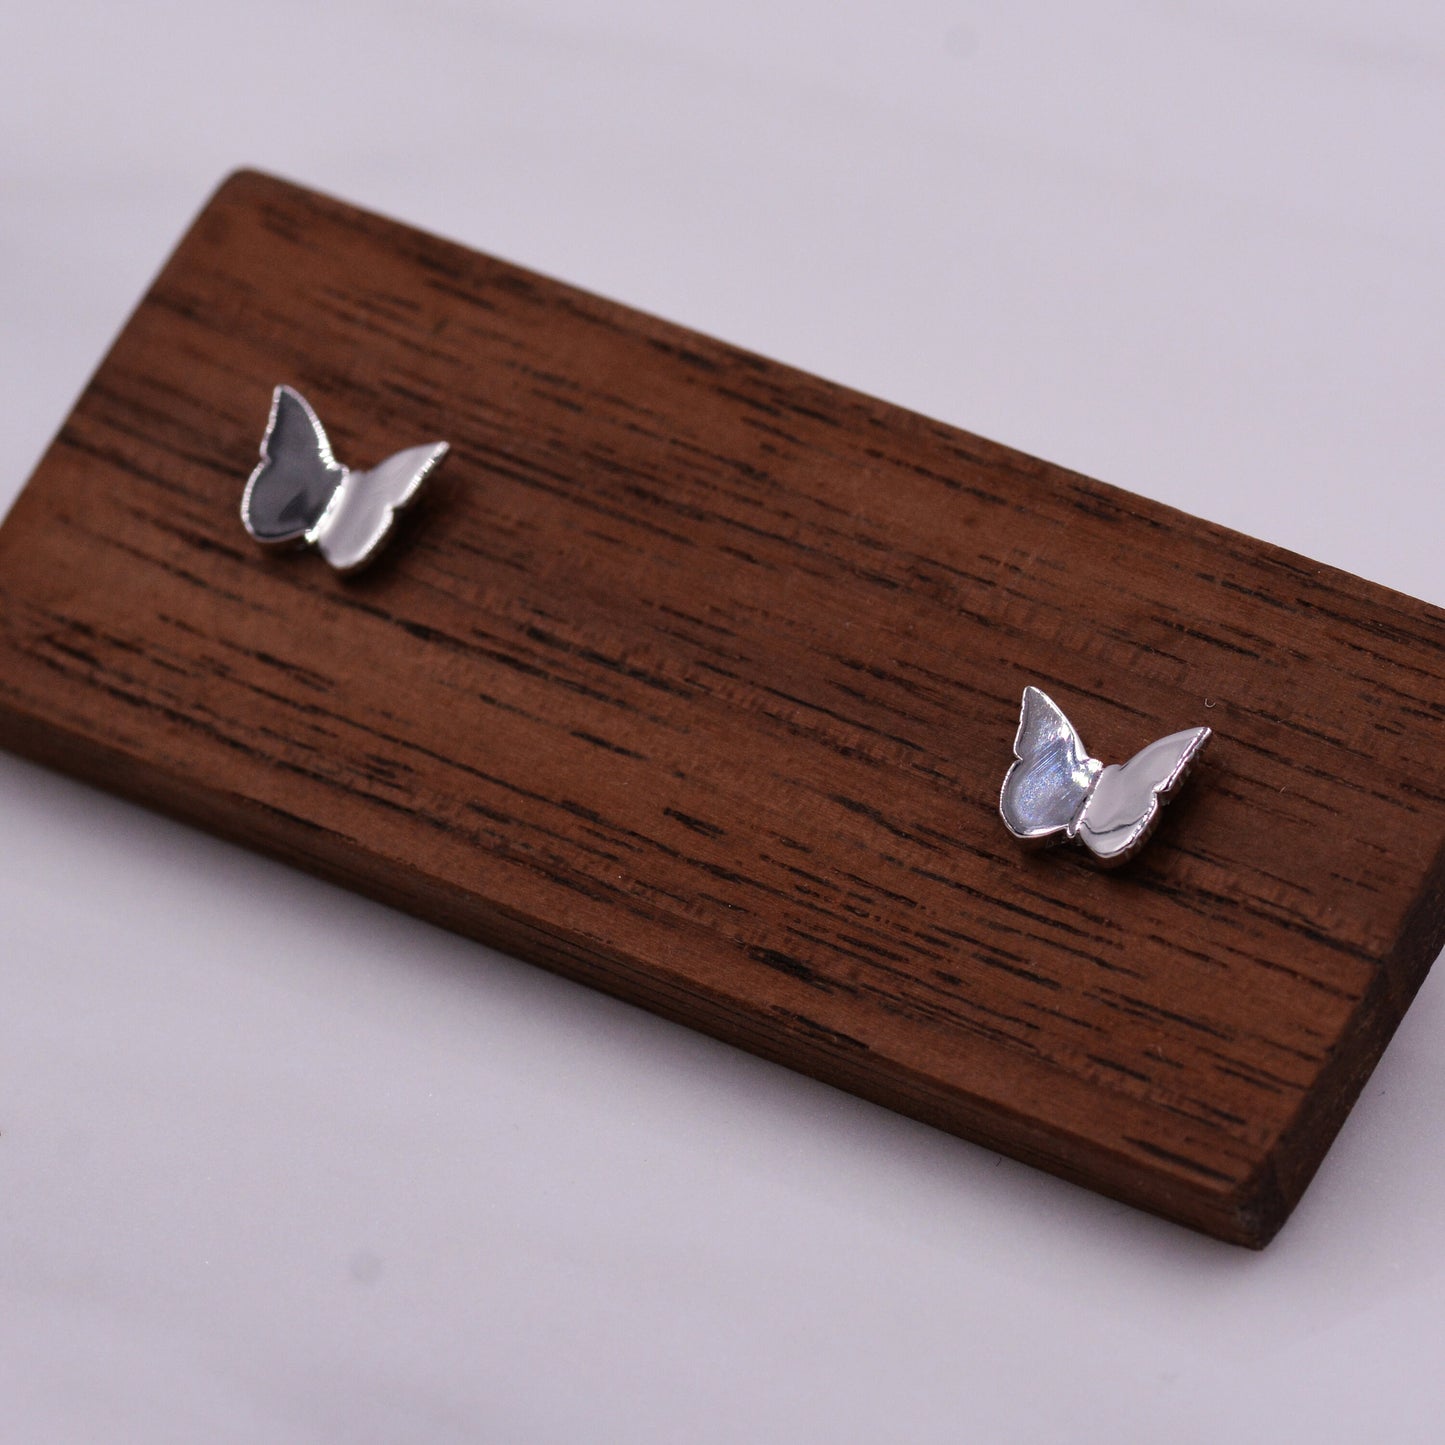 Butterfly Stud Earrings in Sterling Silver, Cute Dainty Minimal Jewellery